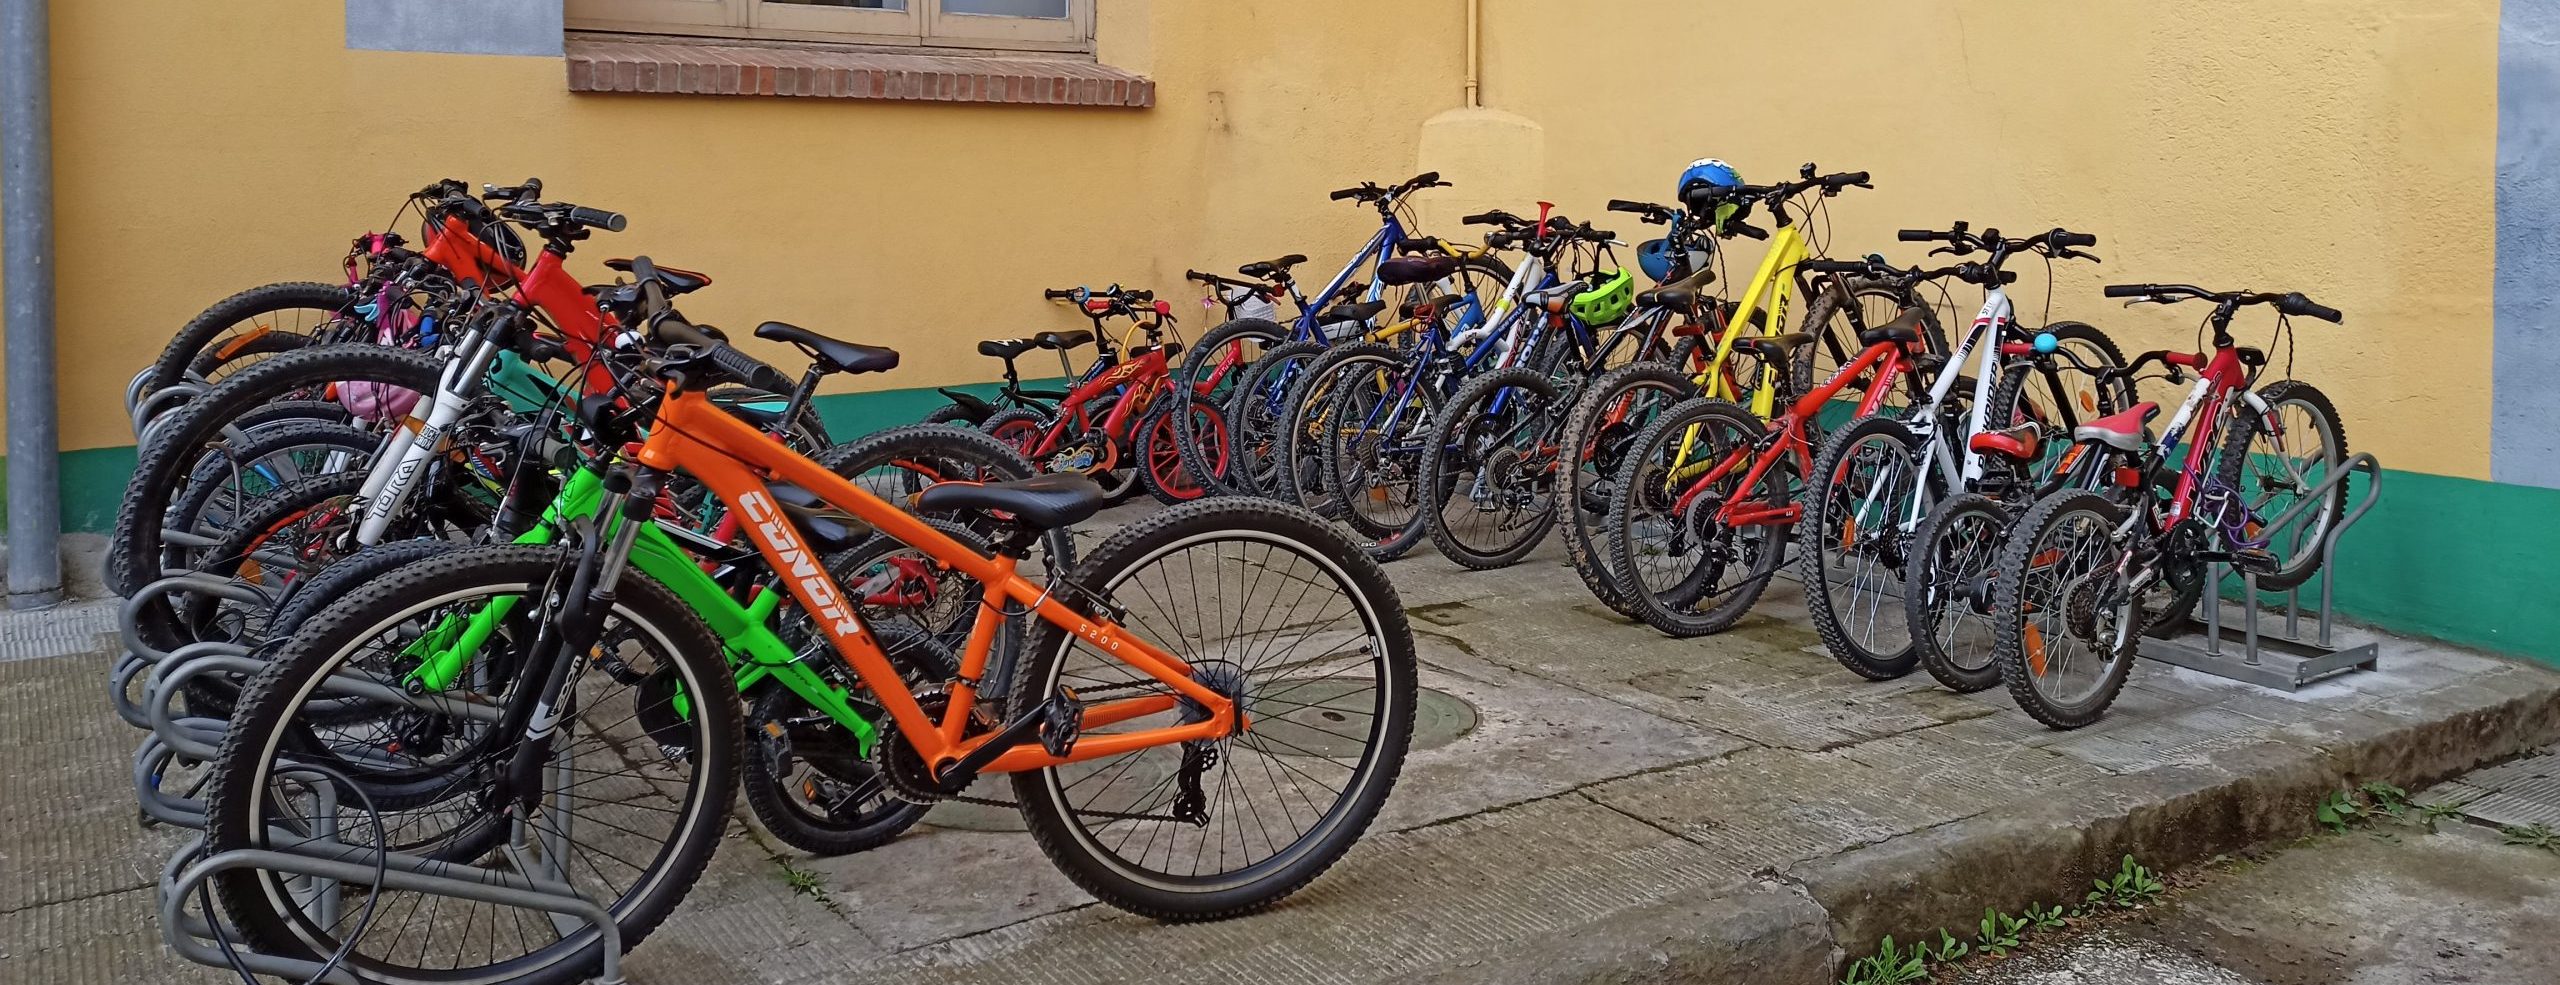 Aparcament de bicicletes dins una escola ple de bicis gràcies al bicibús.